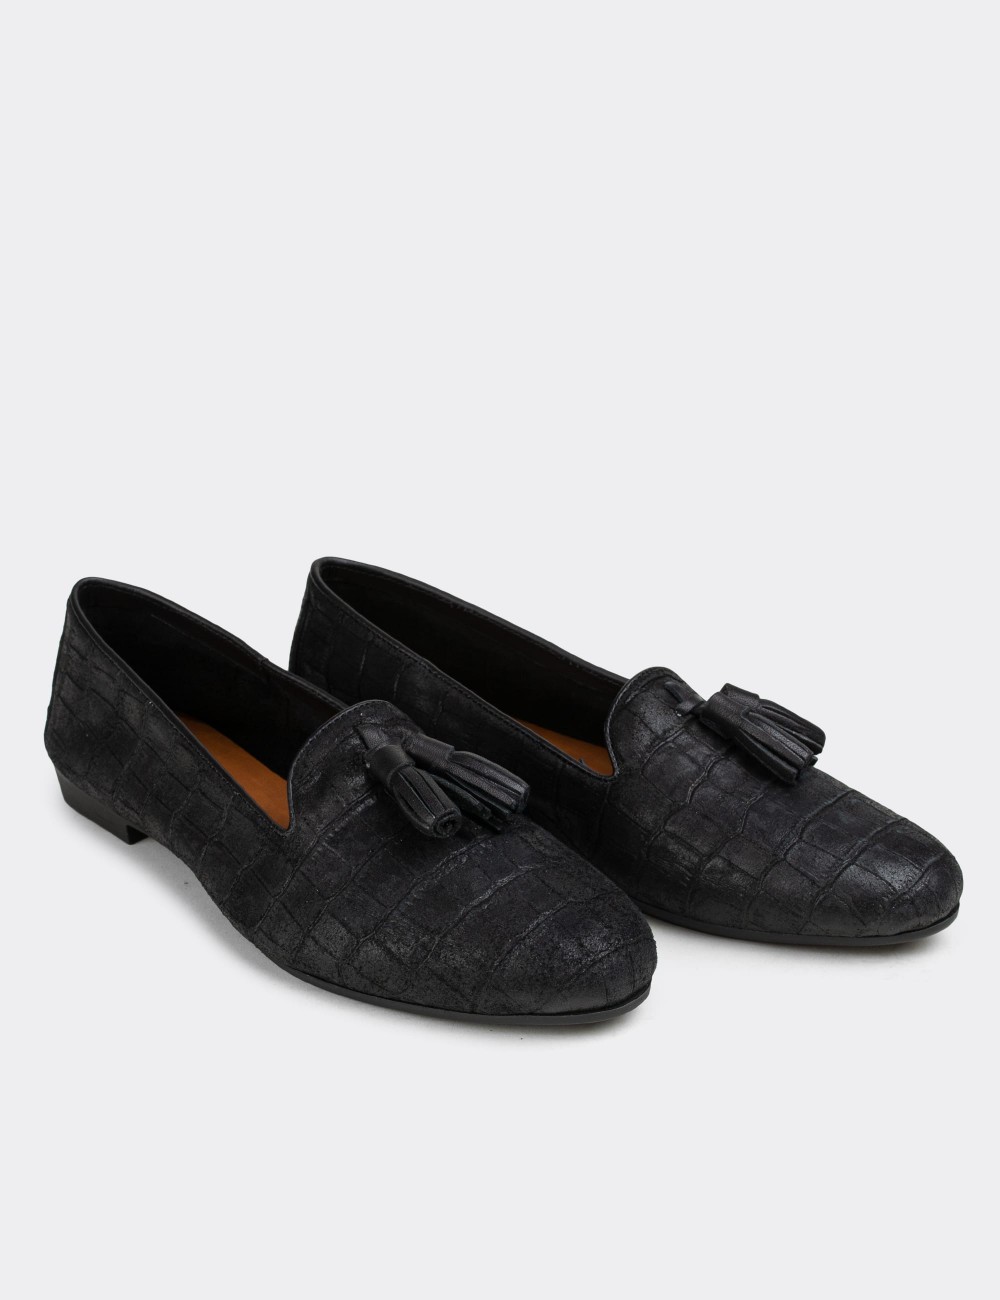 Black Nubuck Leather Loafers  - E3204ZSYHC04